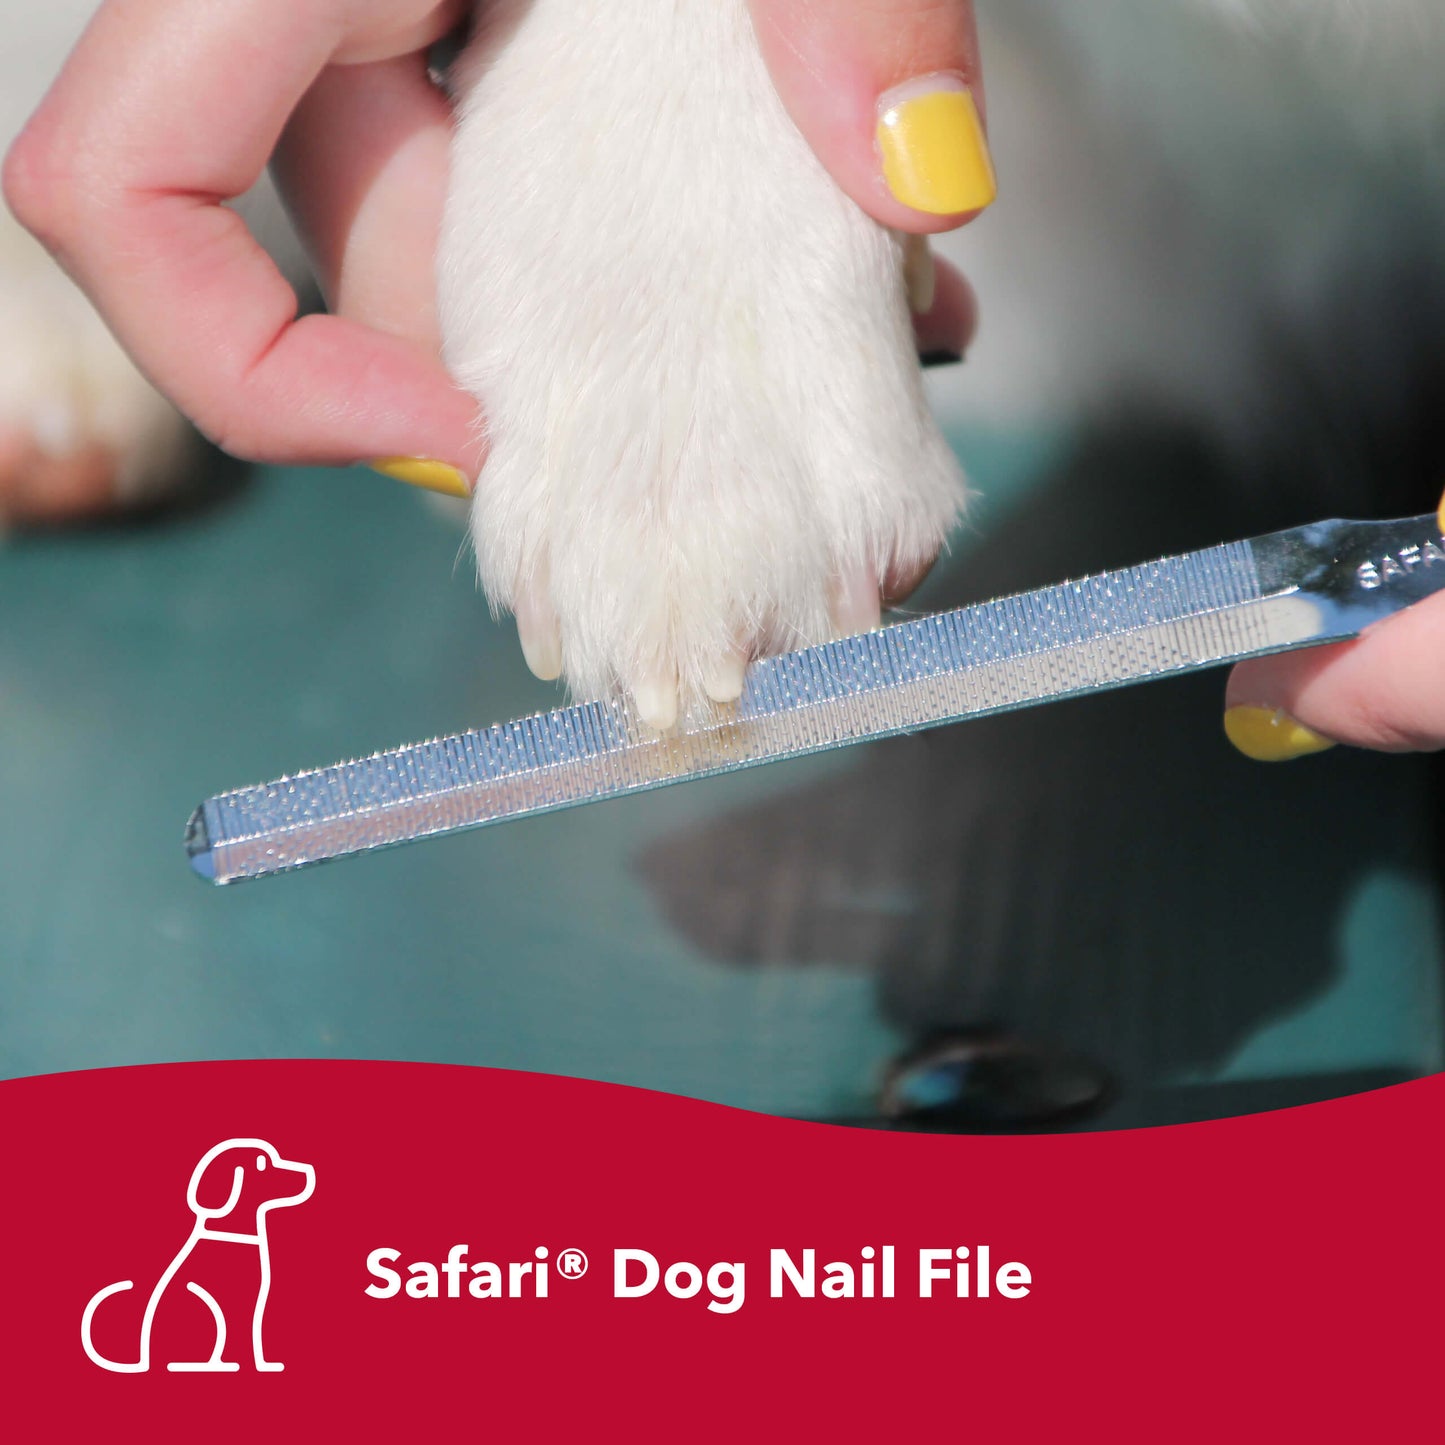 Safari Dog Nail File